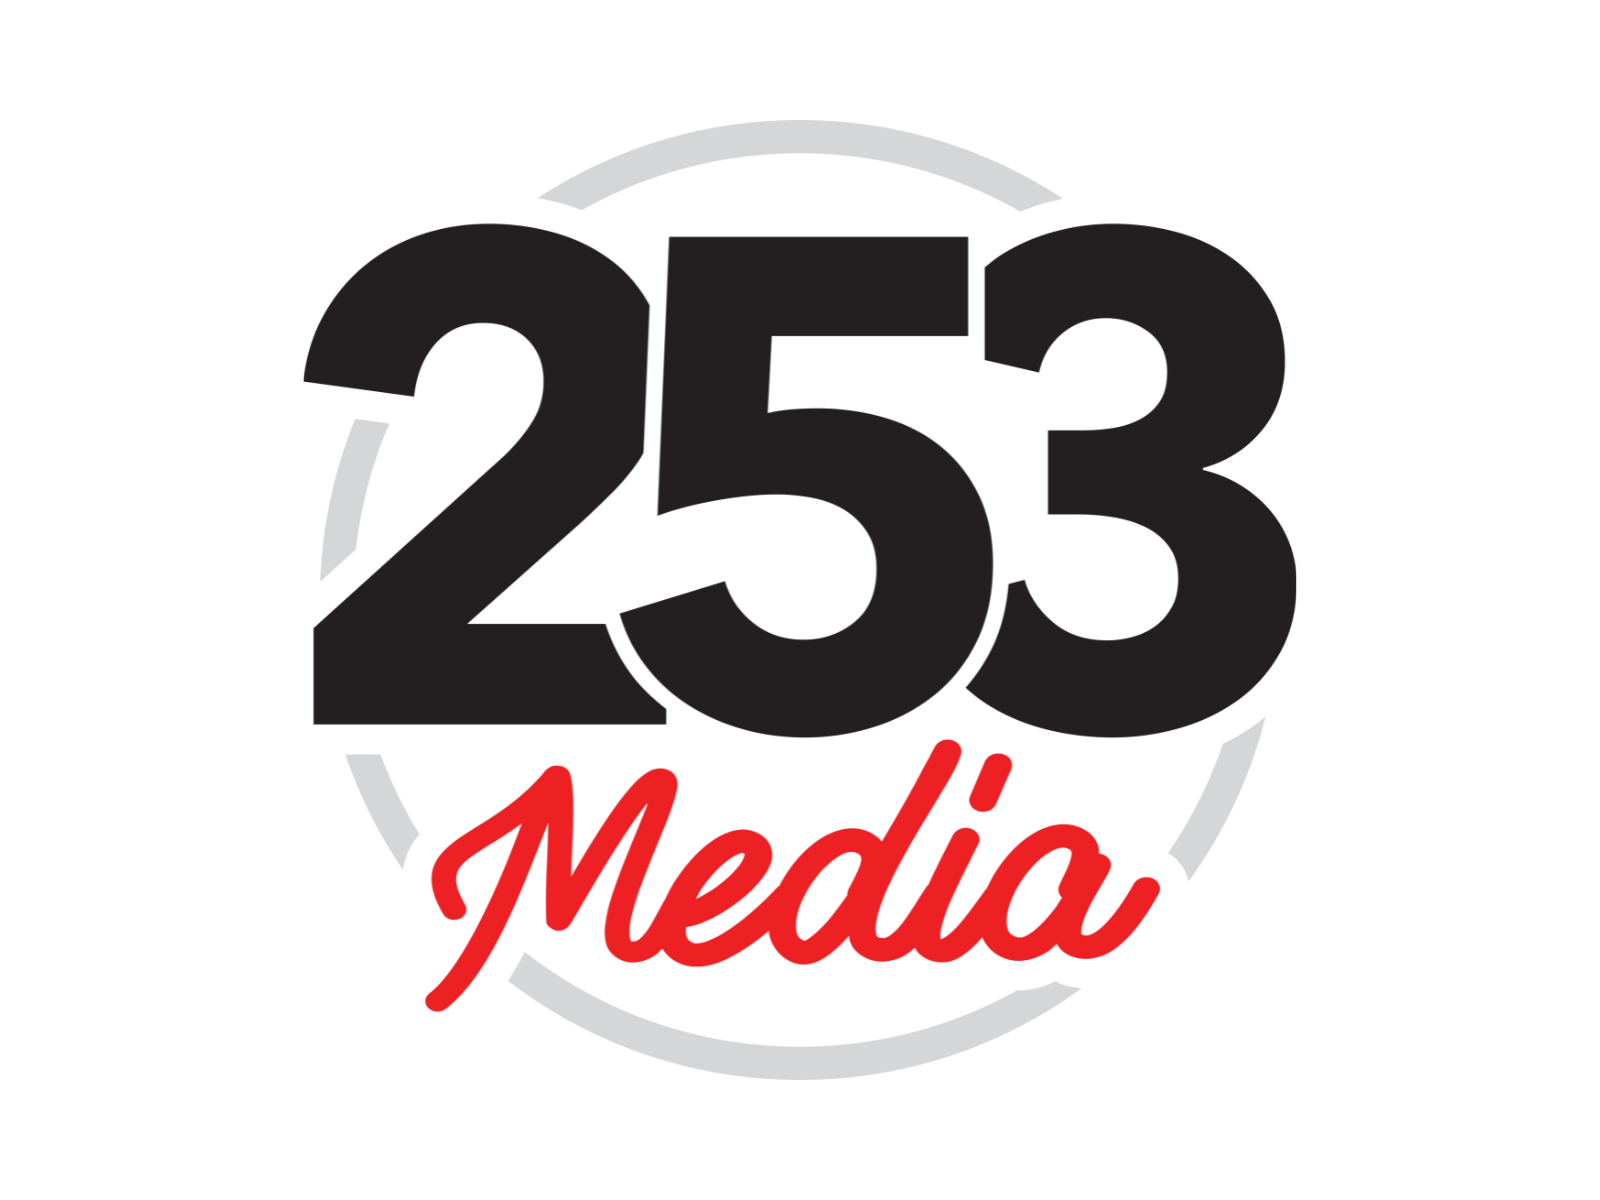 253Media